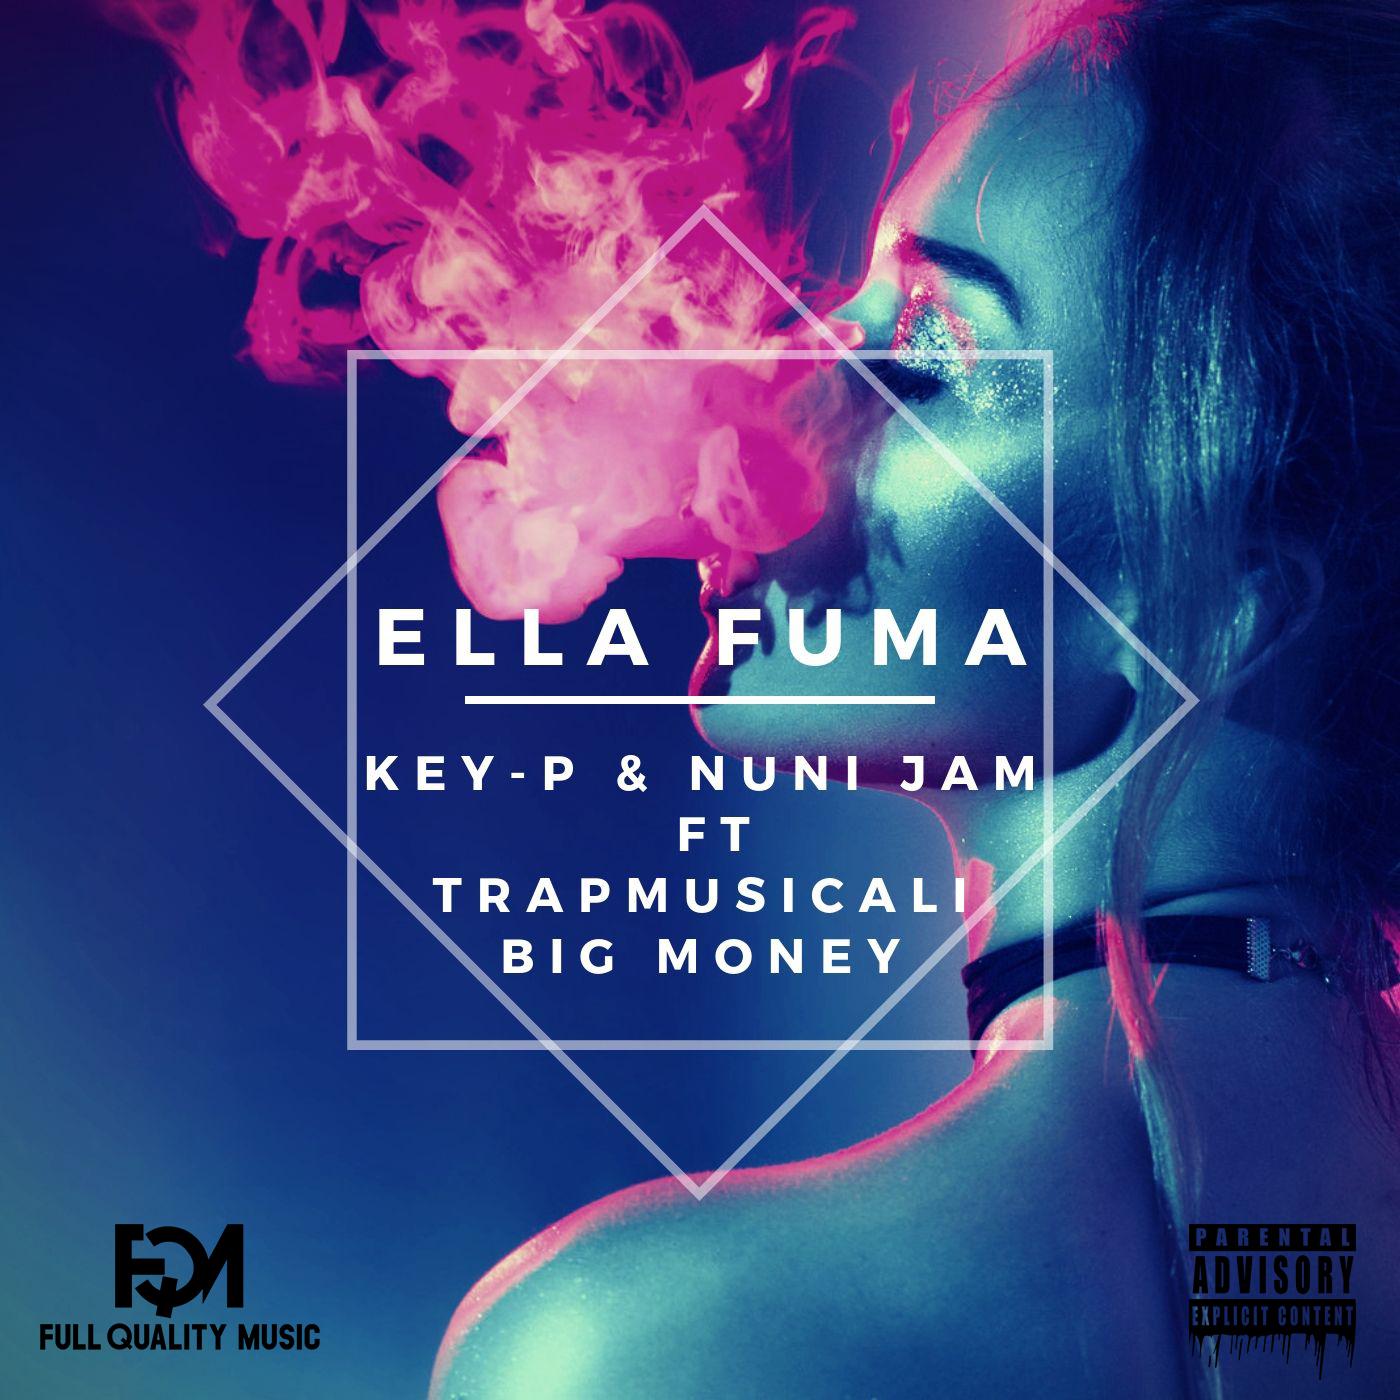 TrapMusiCali - Ella Fuma